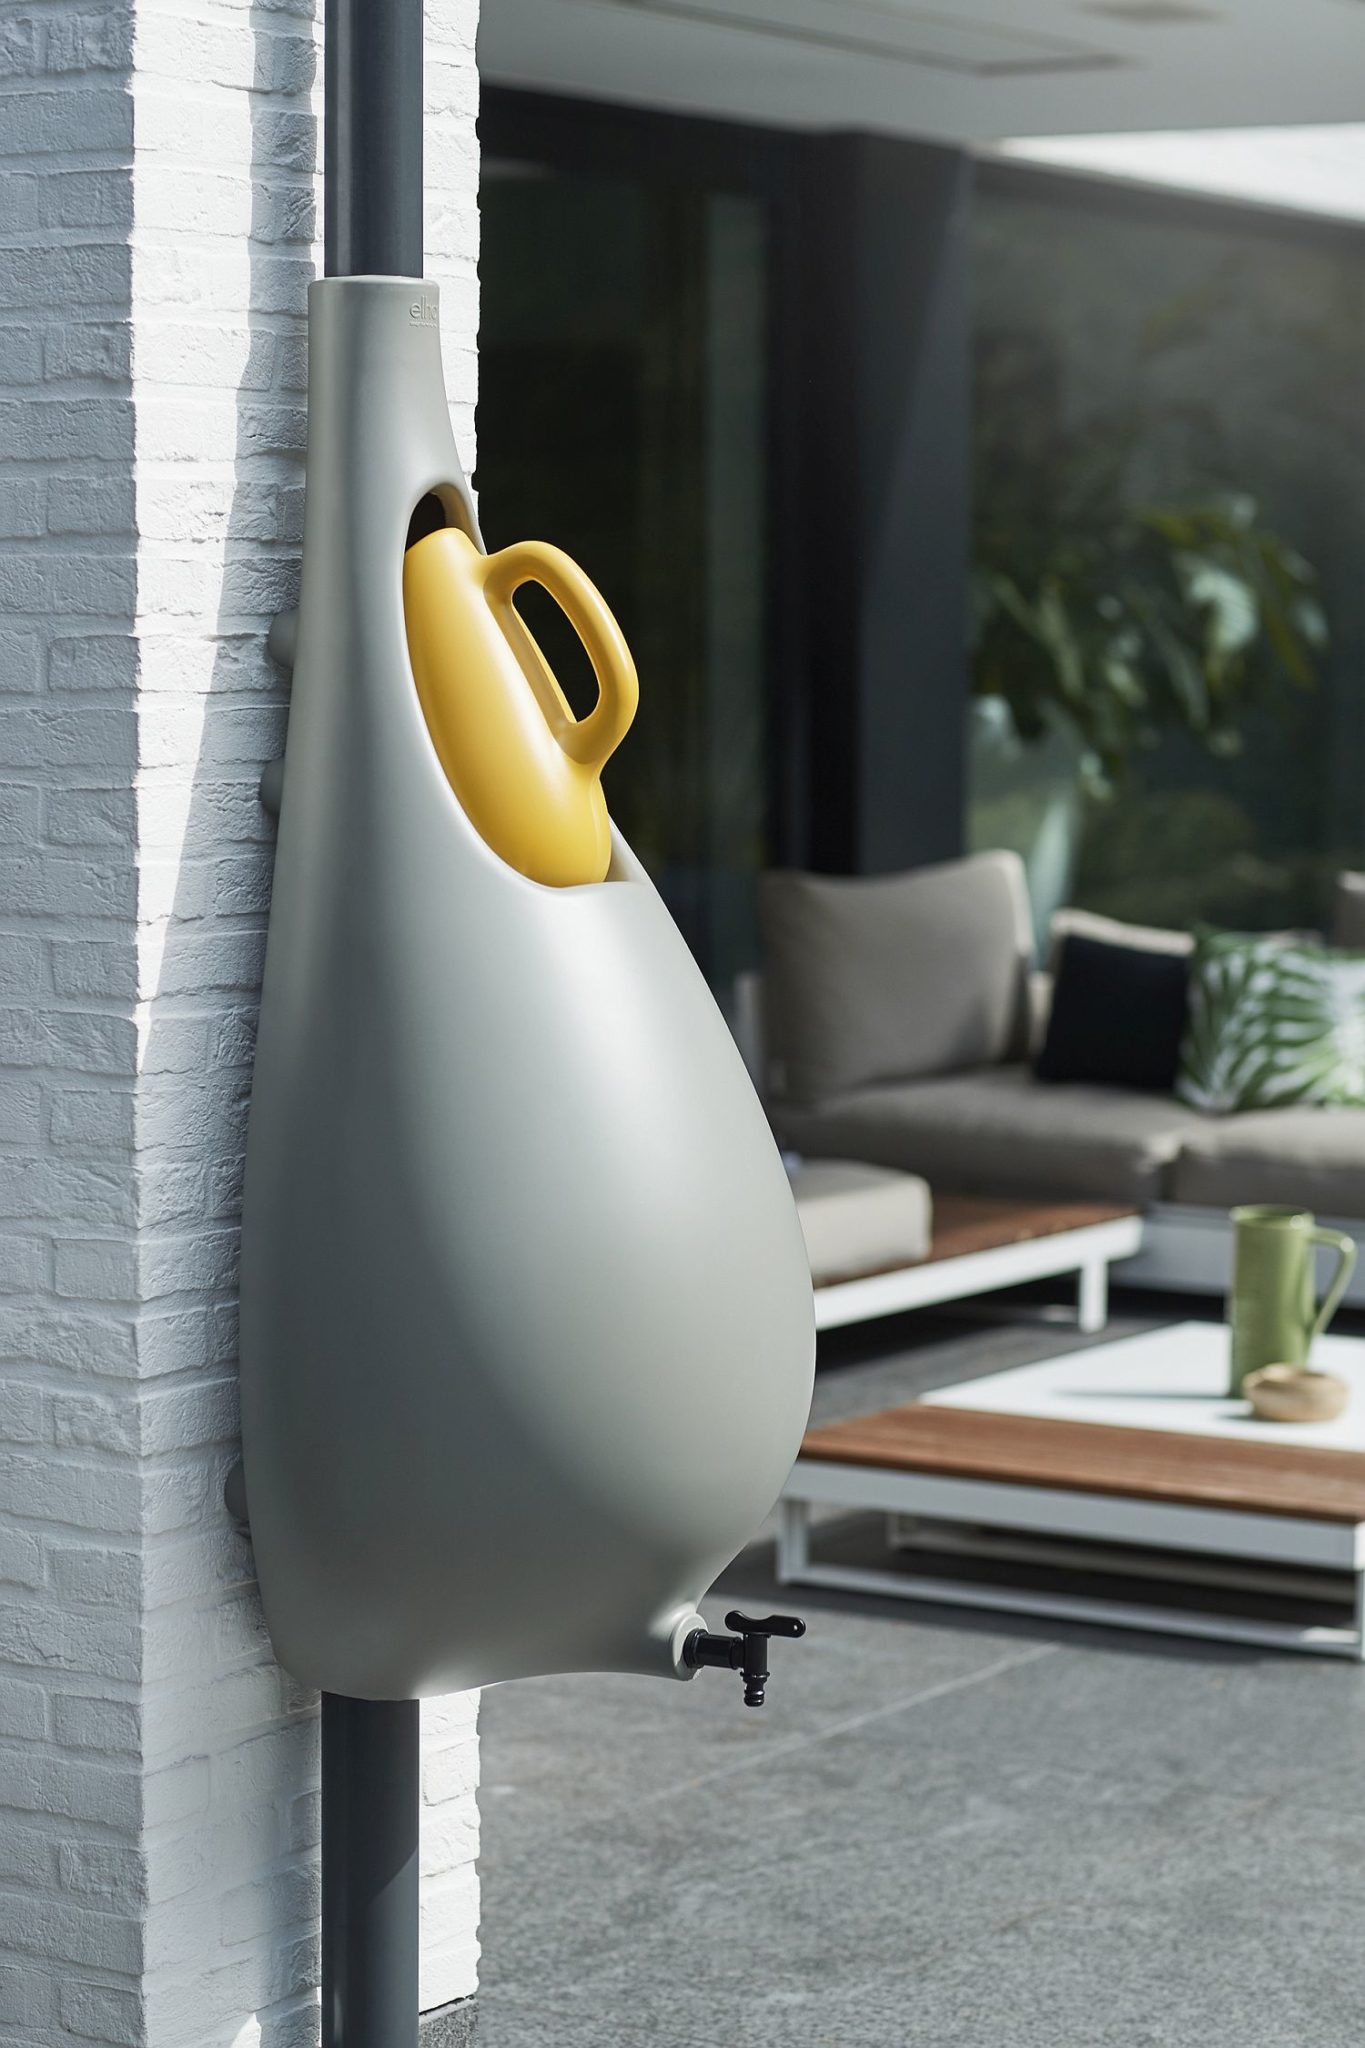 “Bộ máy thu nước mưa” được thiết kế giống như hình một giọt nước lớn.